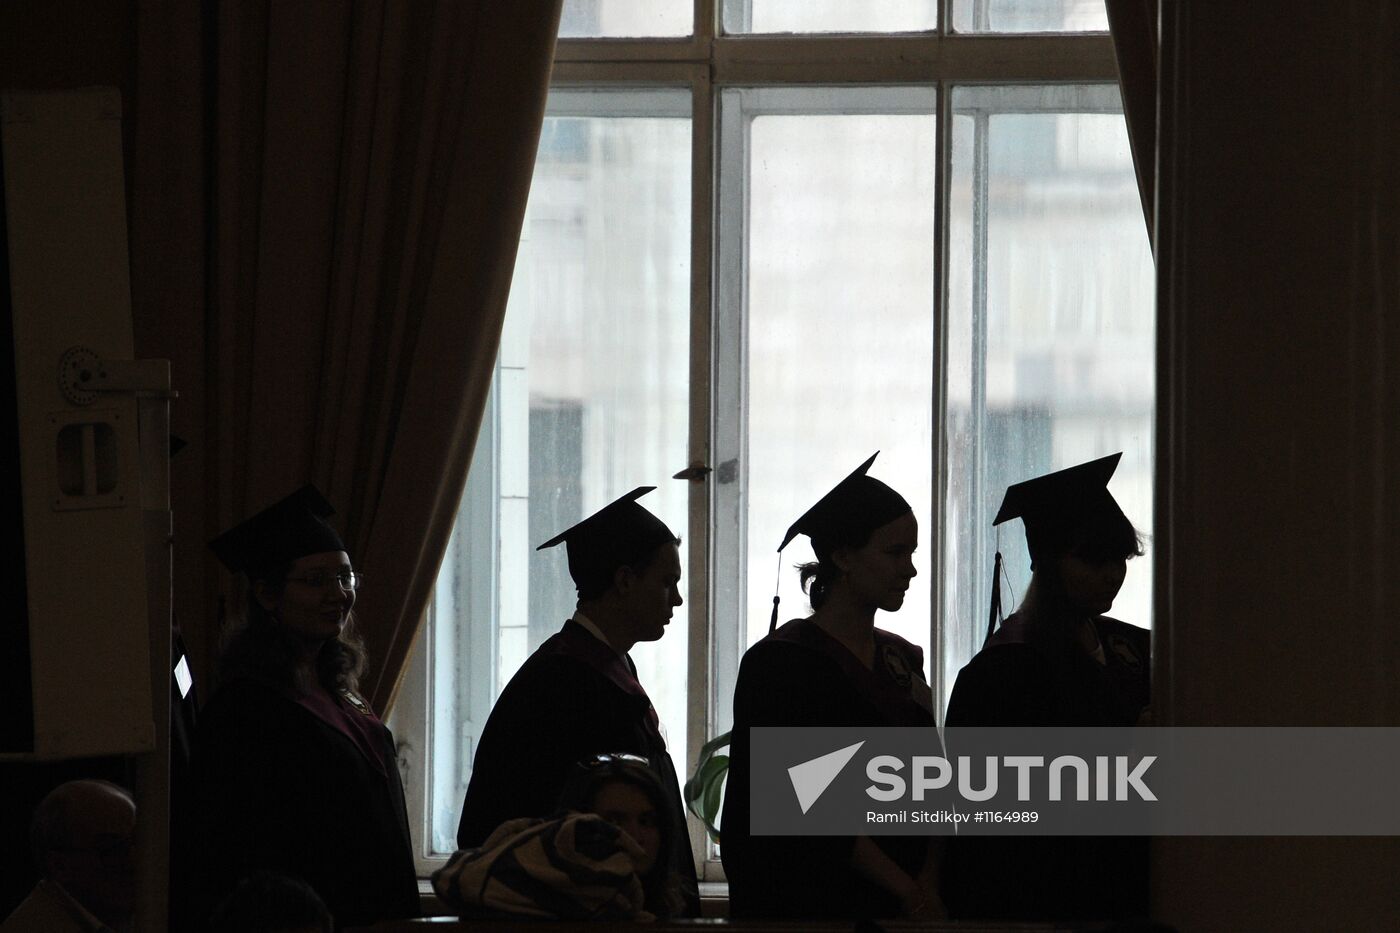 Presentation of diplomas to graduates with honors at MSU